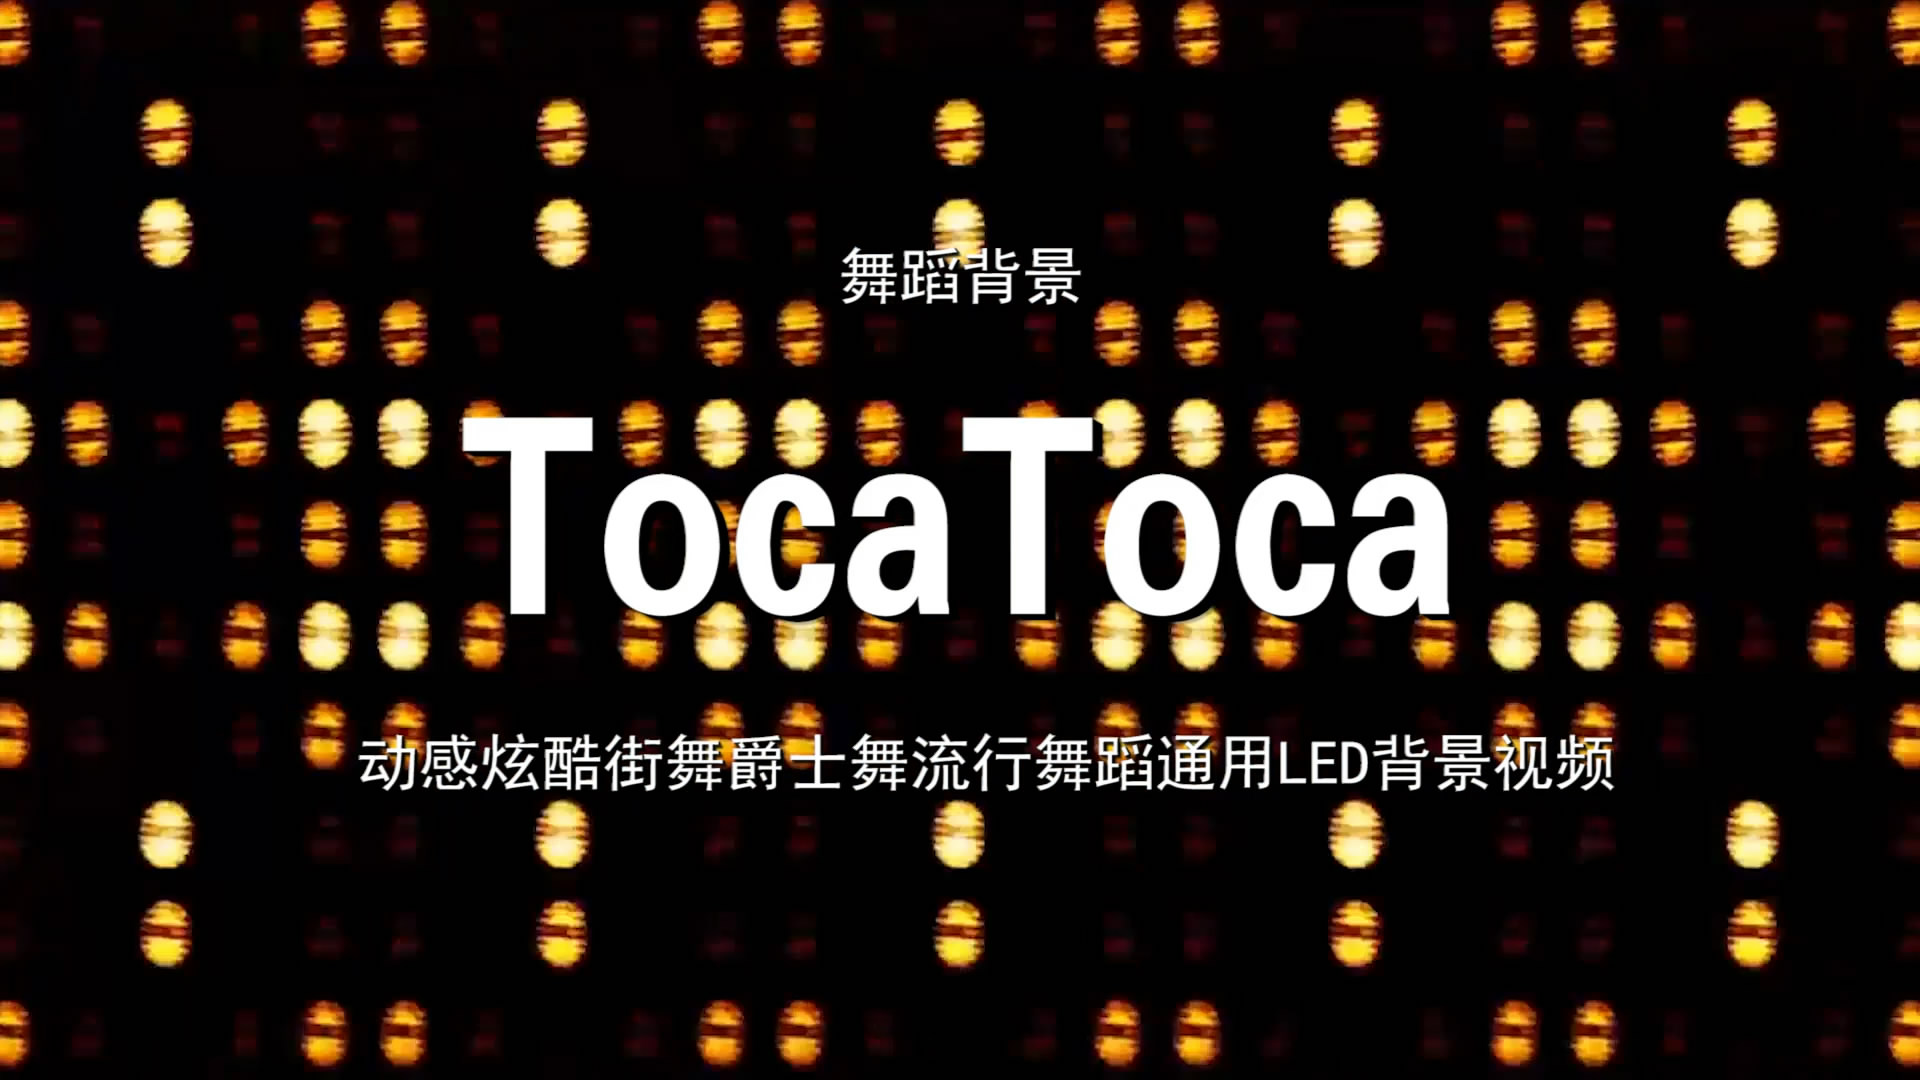 TocaToca 动感炫酷街舞流行